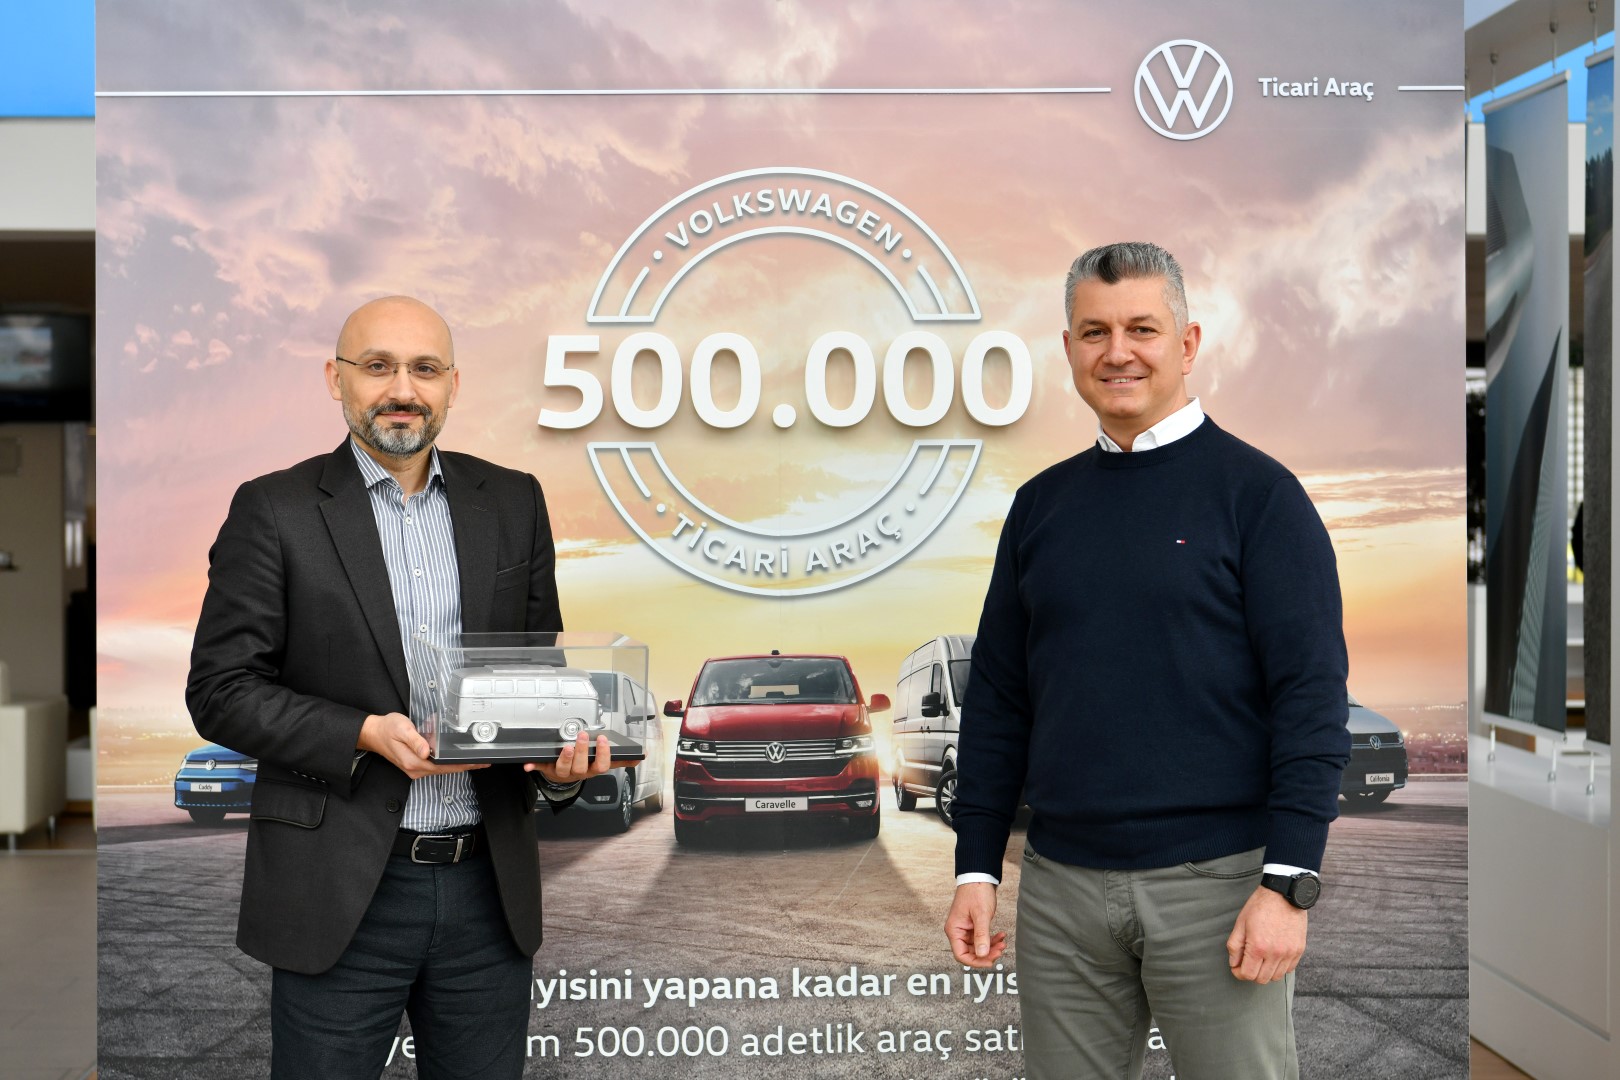 Volkswagen Ticari Araç Türkiye pazarına 500 bina araç sattı